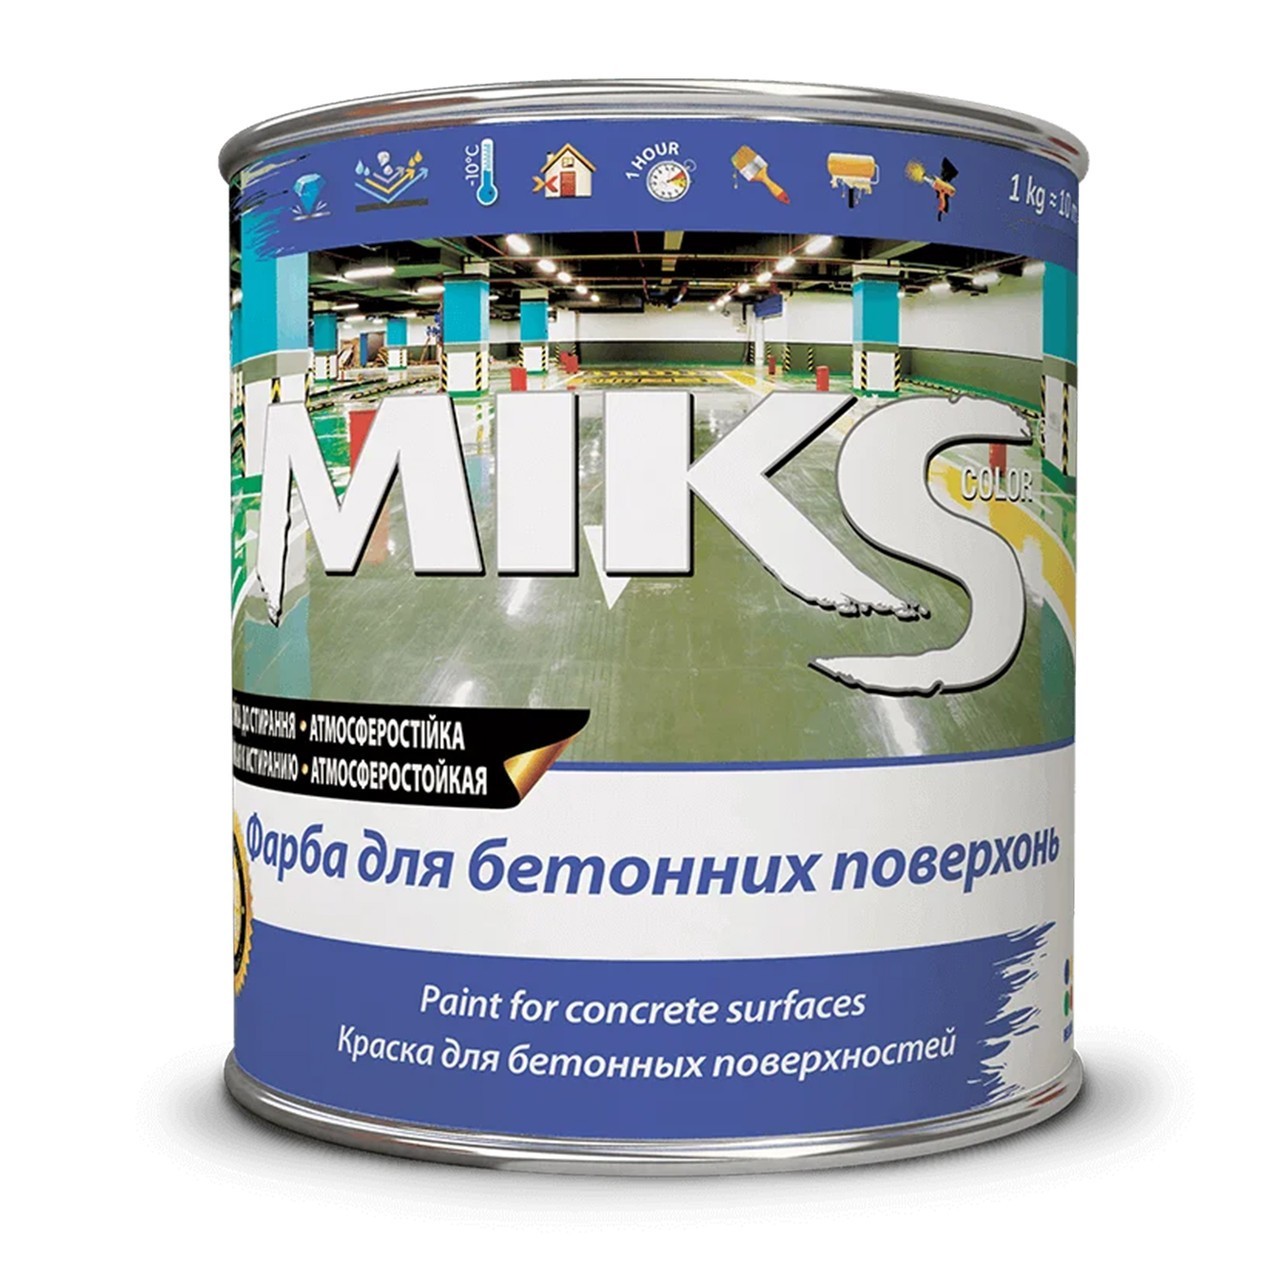 Краска для бетонных поверхностей Белая 3 кг Miks color – низкие цены .